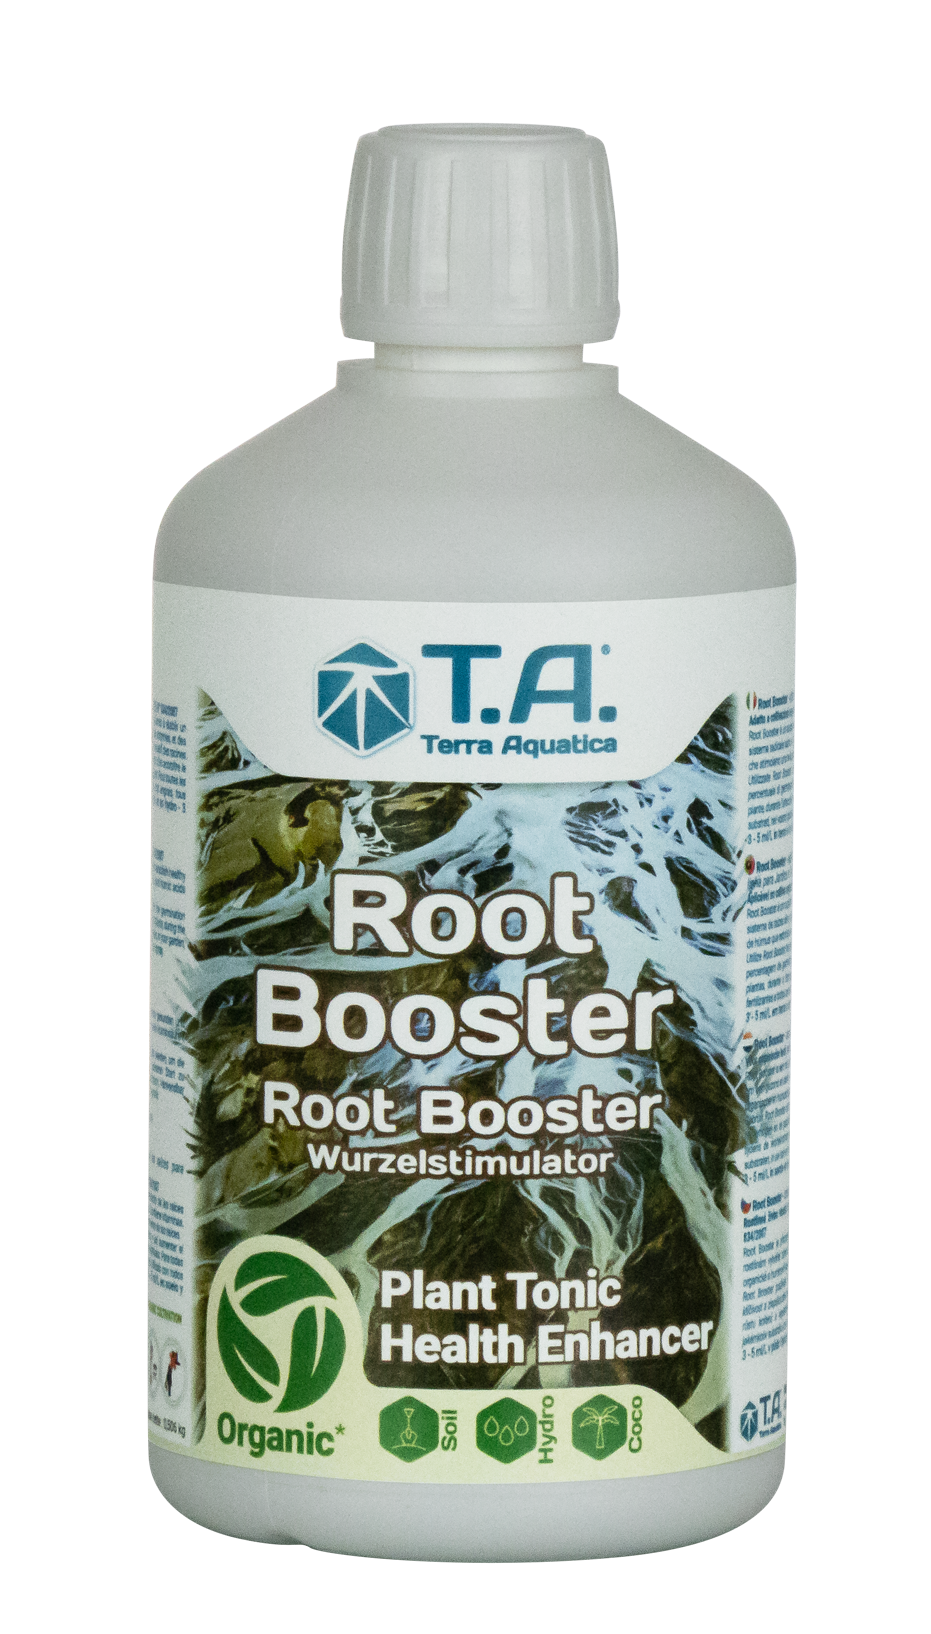 Root Booster - რუთ ბუსტერი